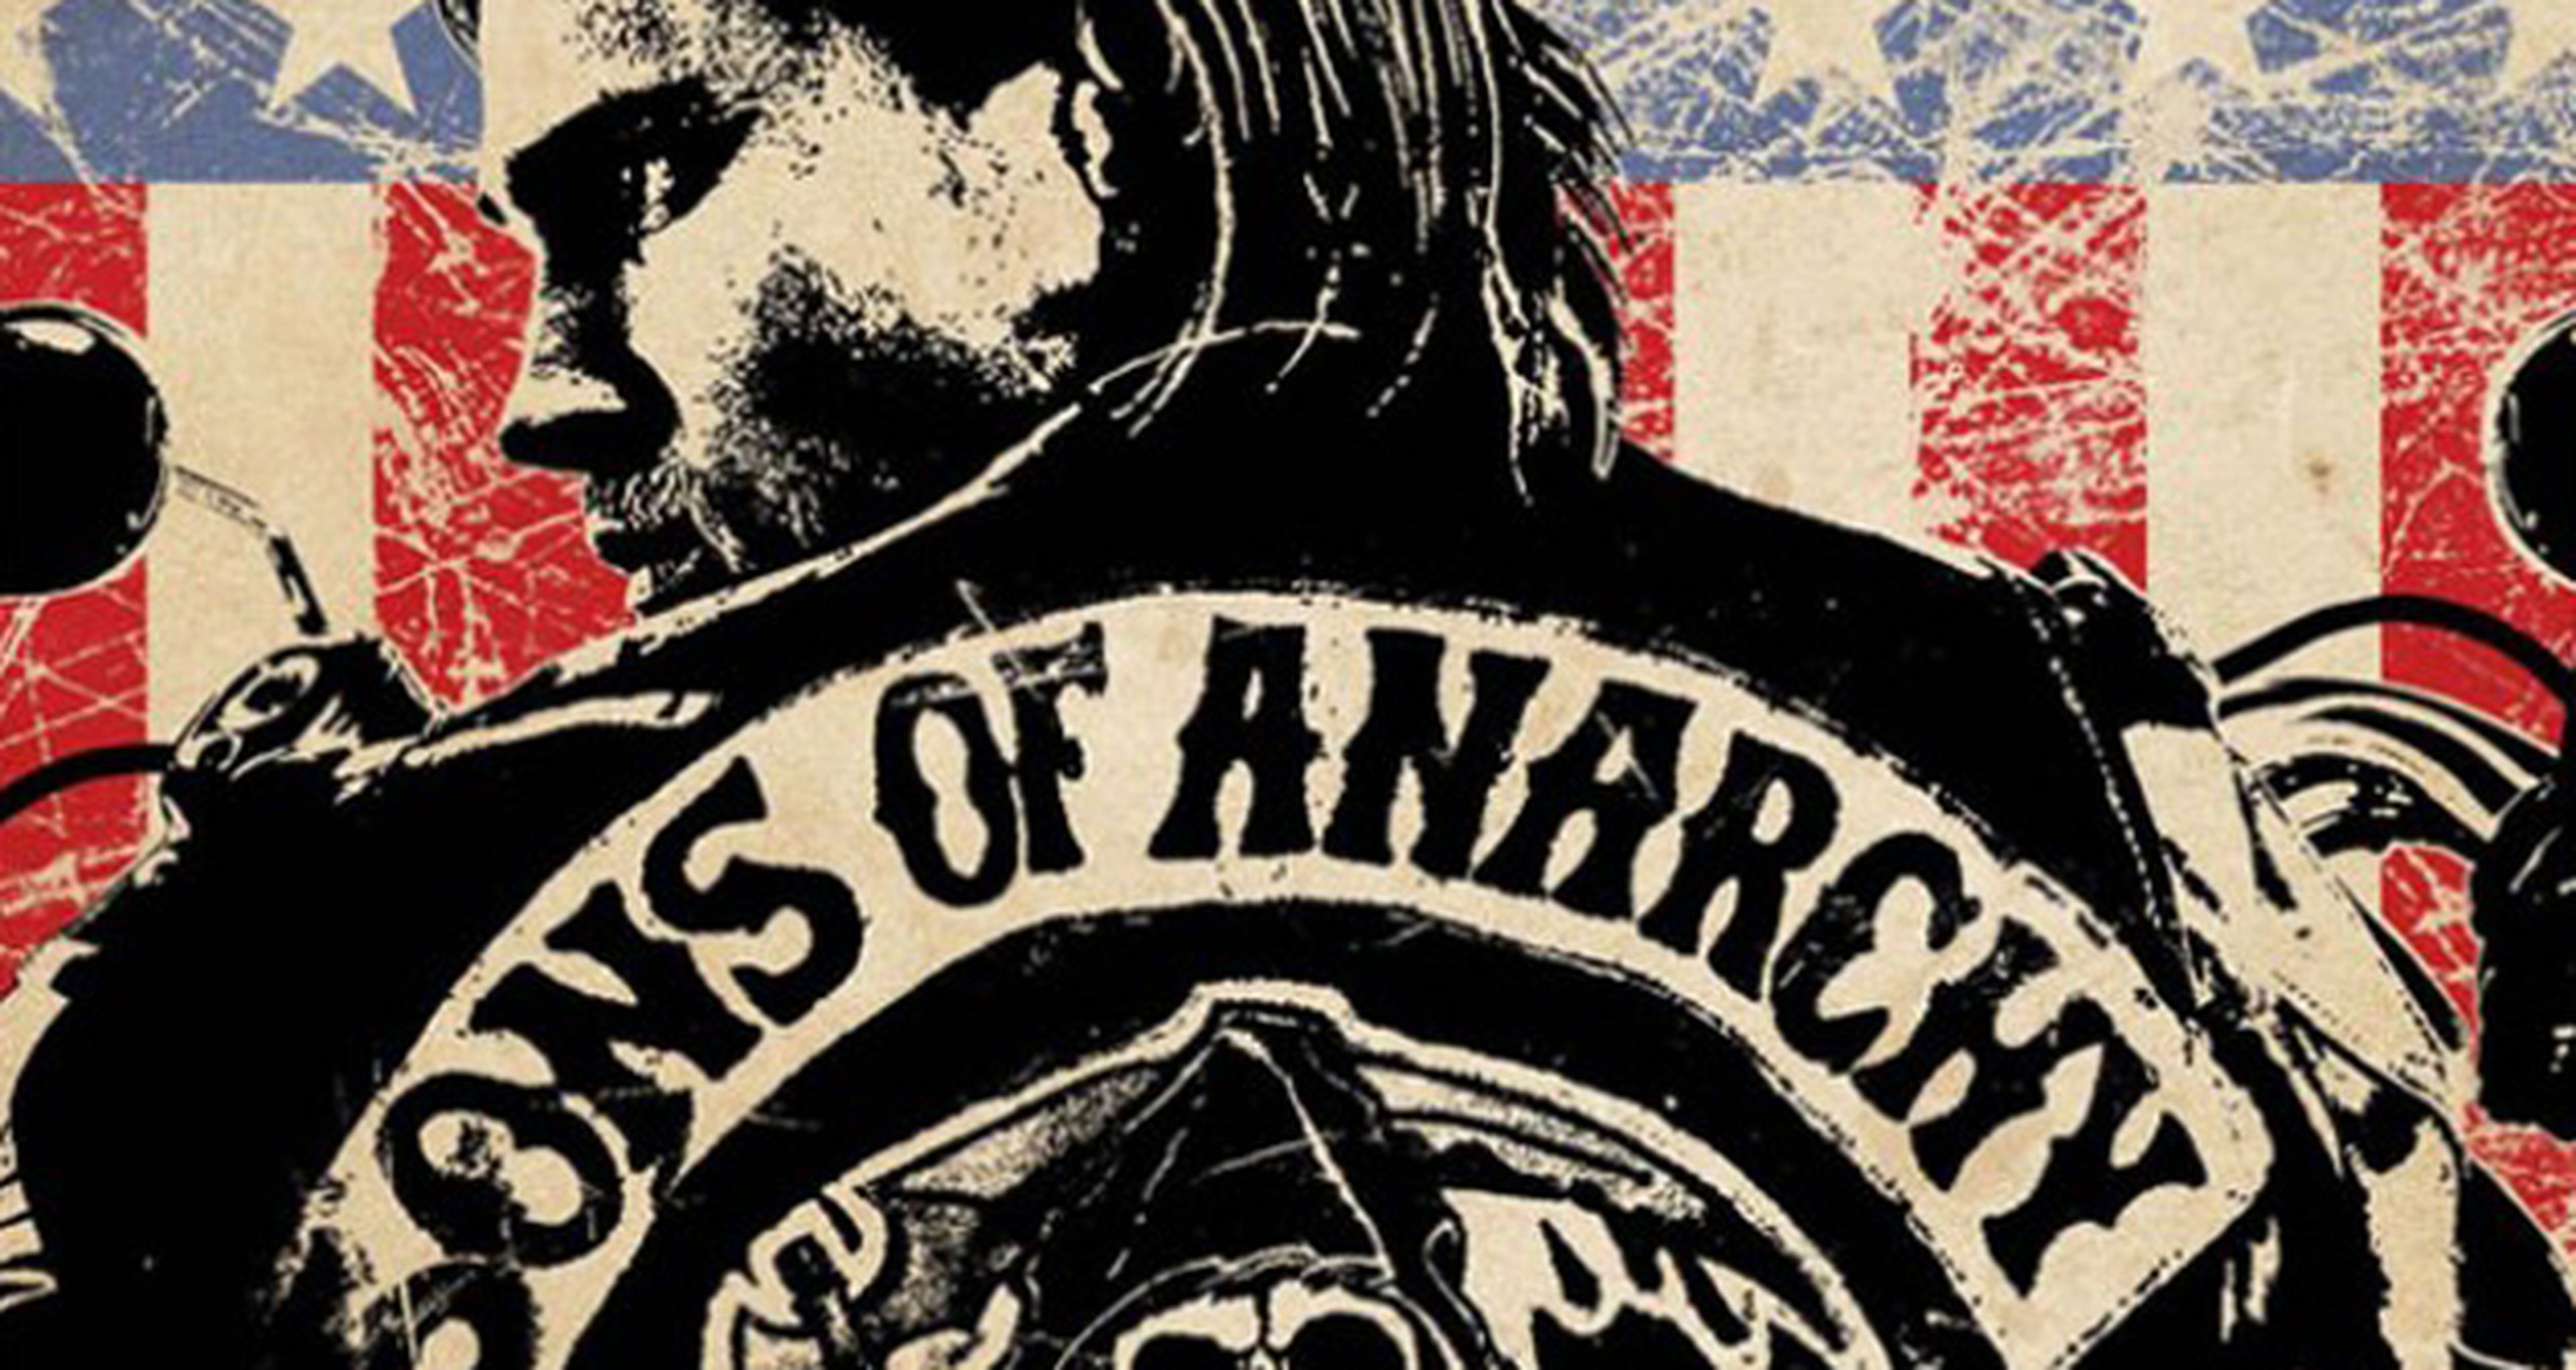 Sons of Anarchy confirma su videojuego